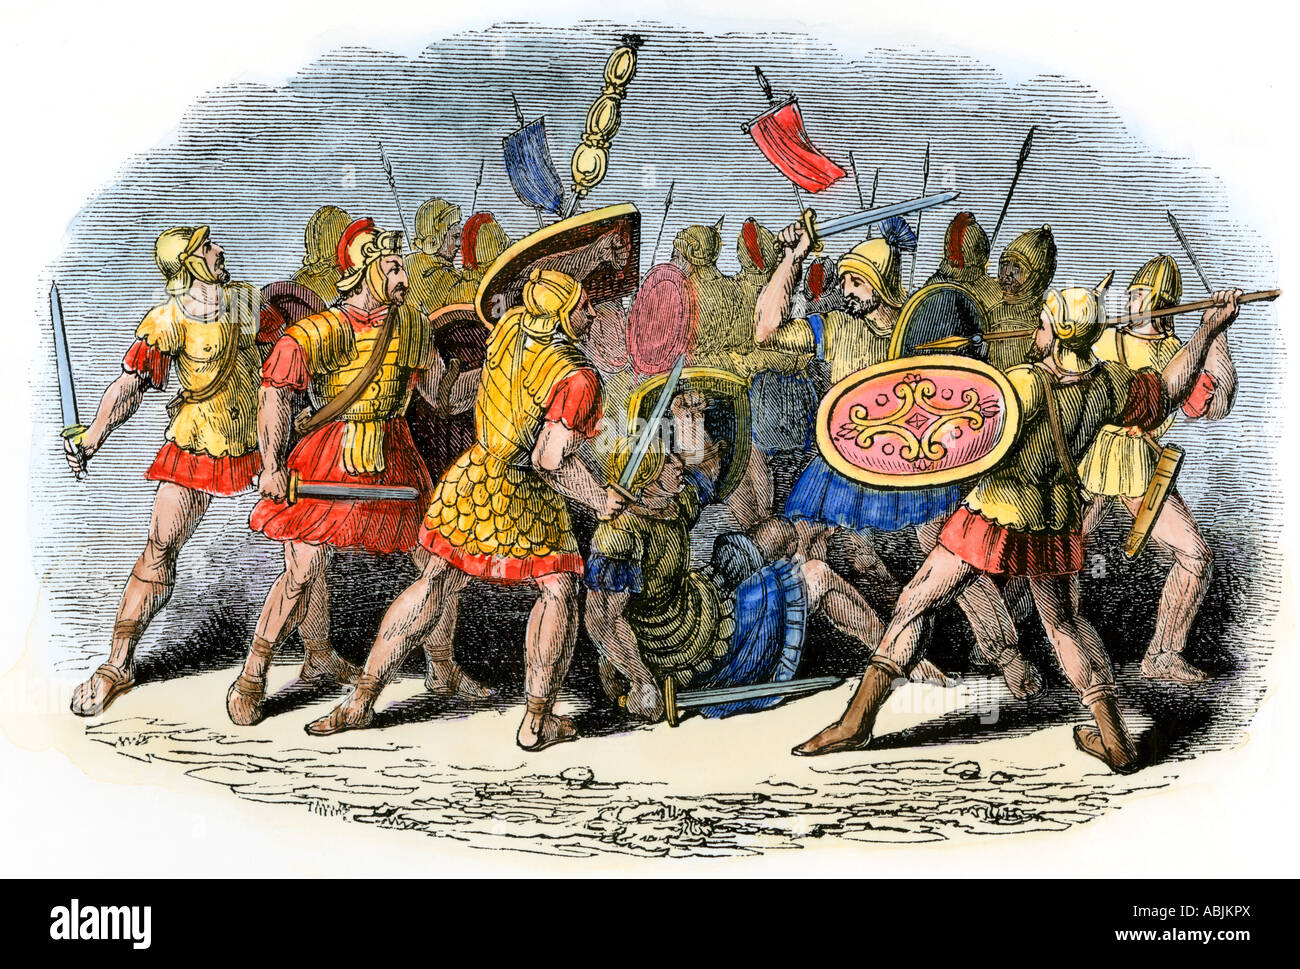 Bataille de soldats Romains contre les sarmates. À la main, gravure sur bois Banque D'Images